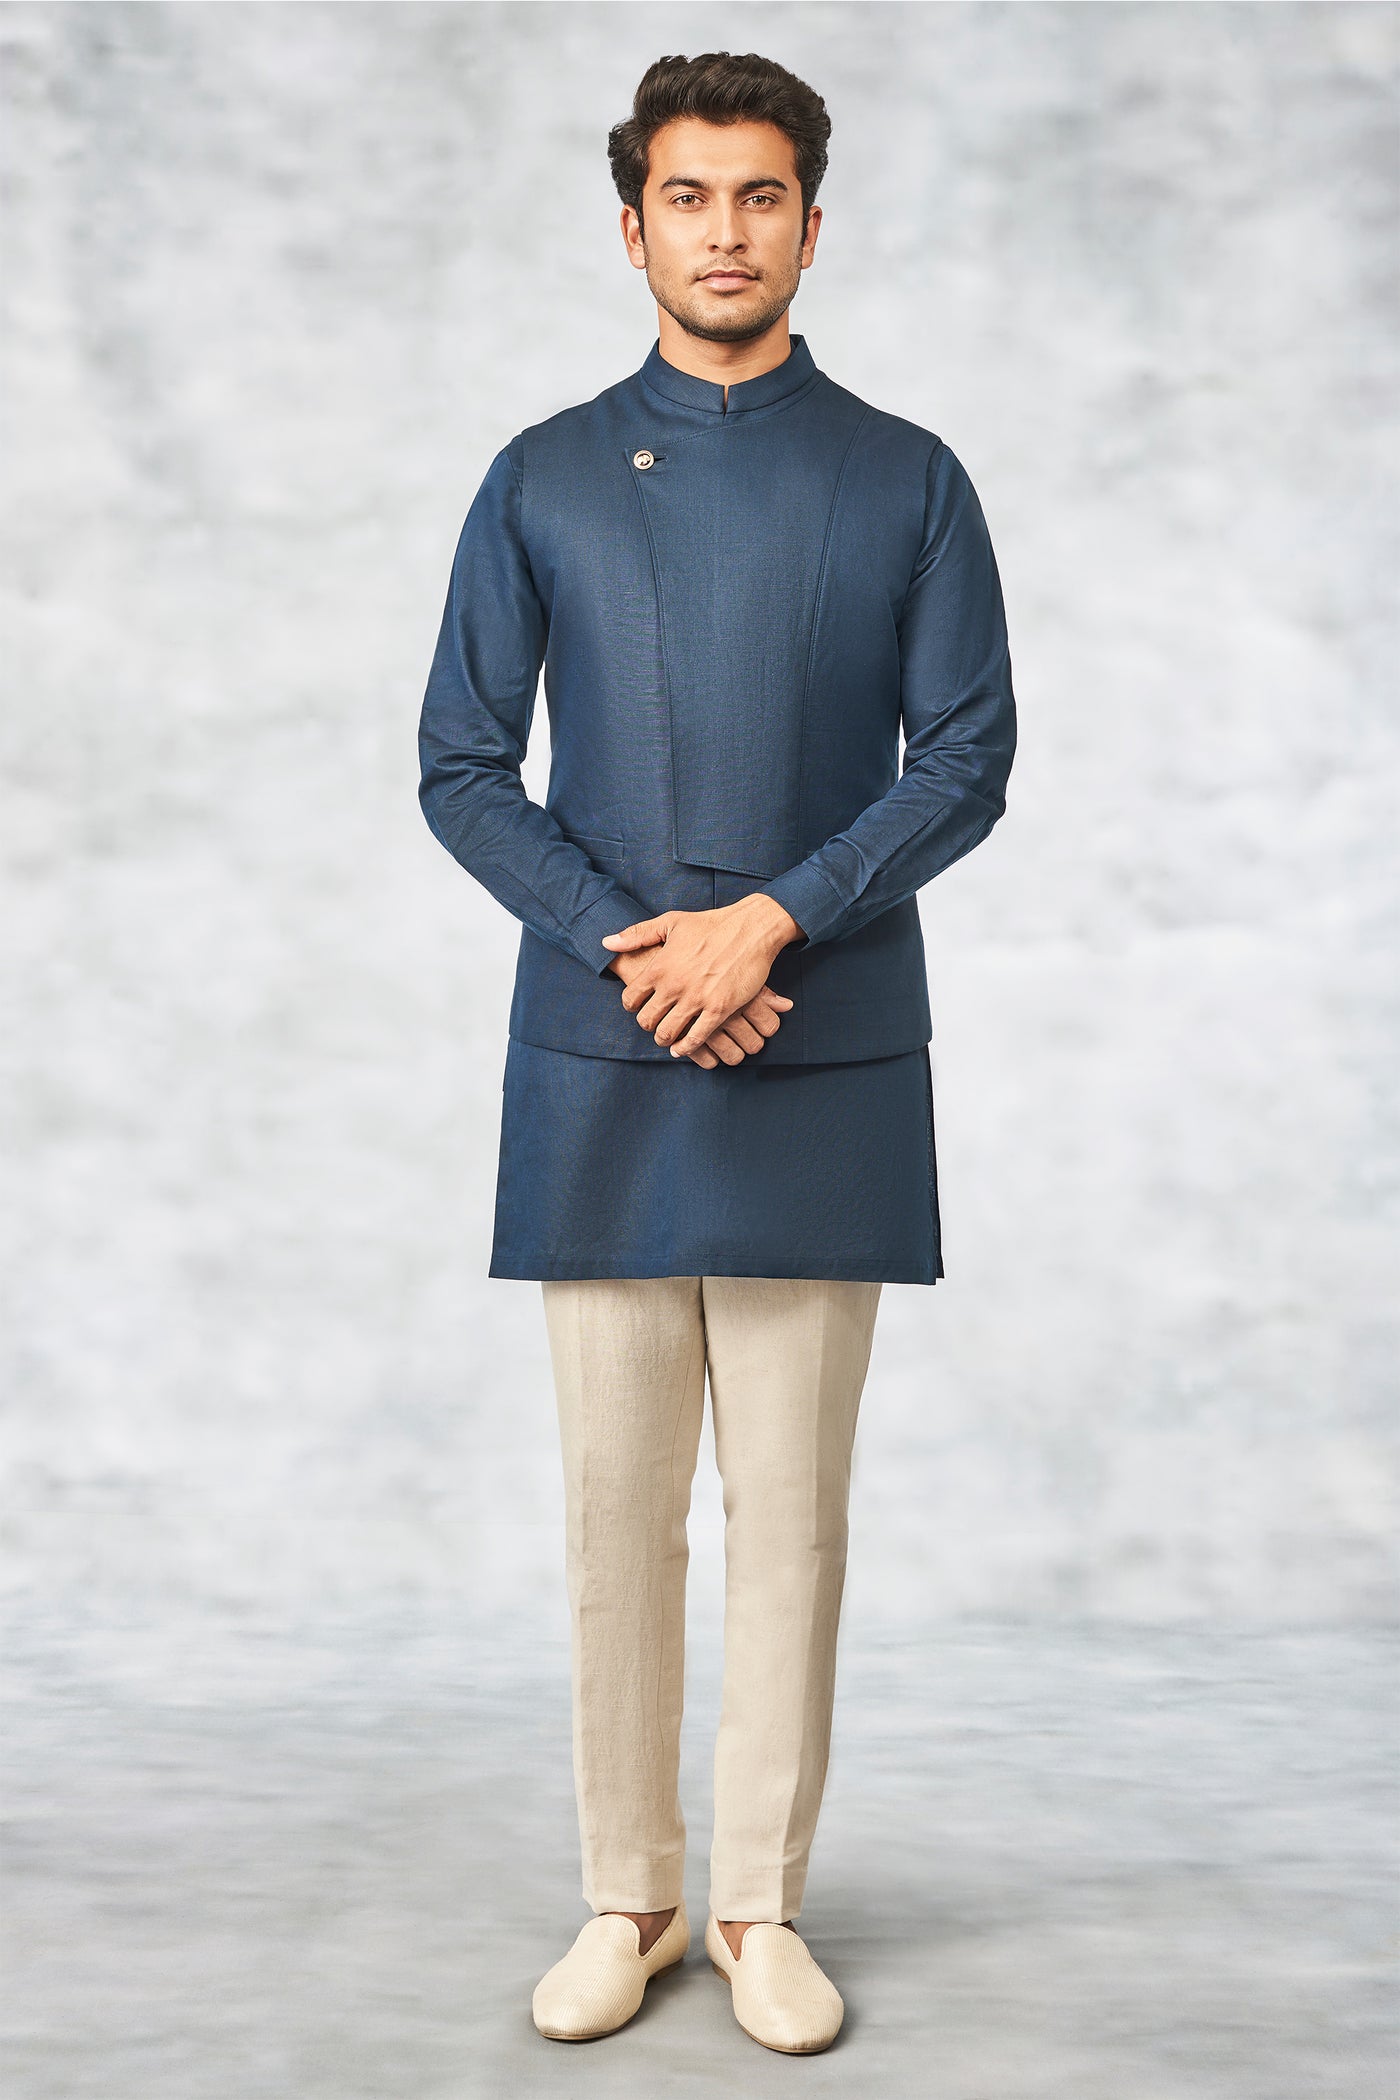 Anita Dongre menswear Rakhbir Bandi bundi Navy Blue  indian designer wear wedding online shopping melange singapore festive jacket